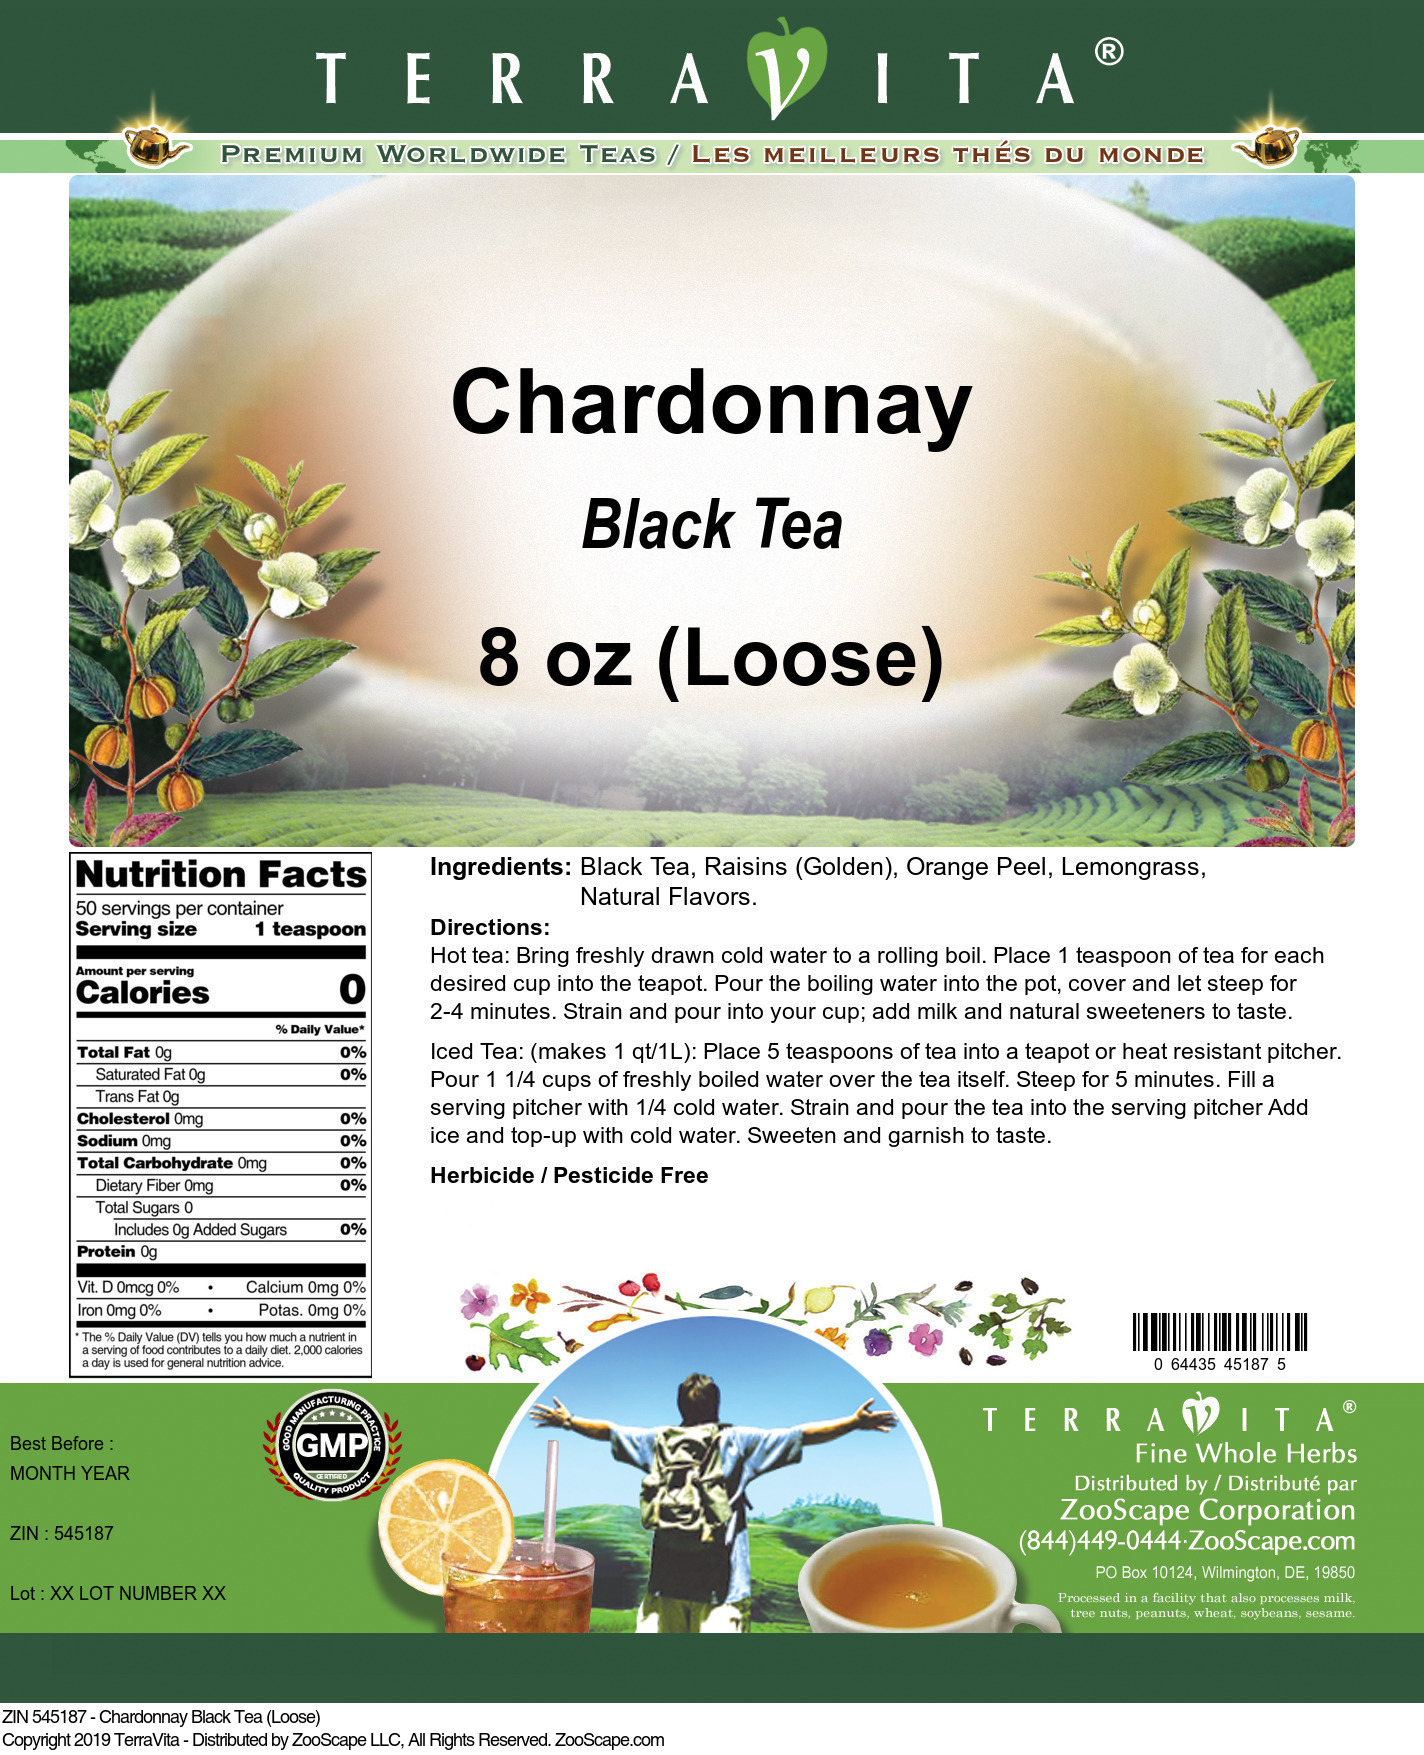 Chardonnay Black Tea (Loose) - Label